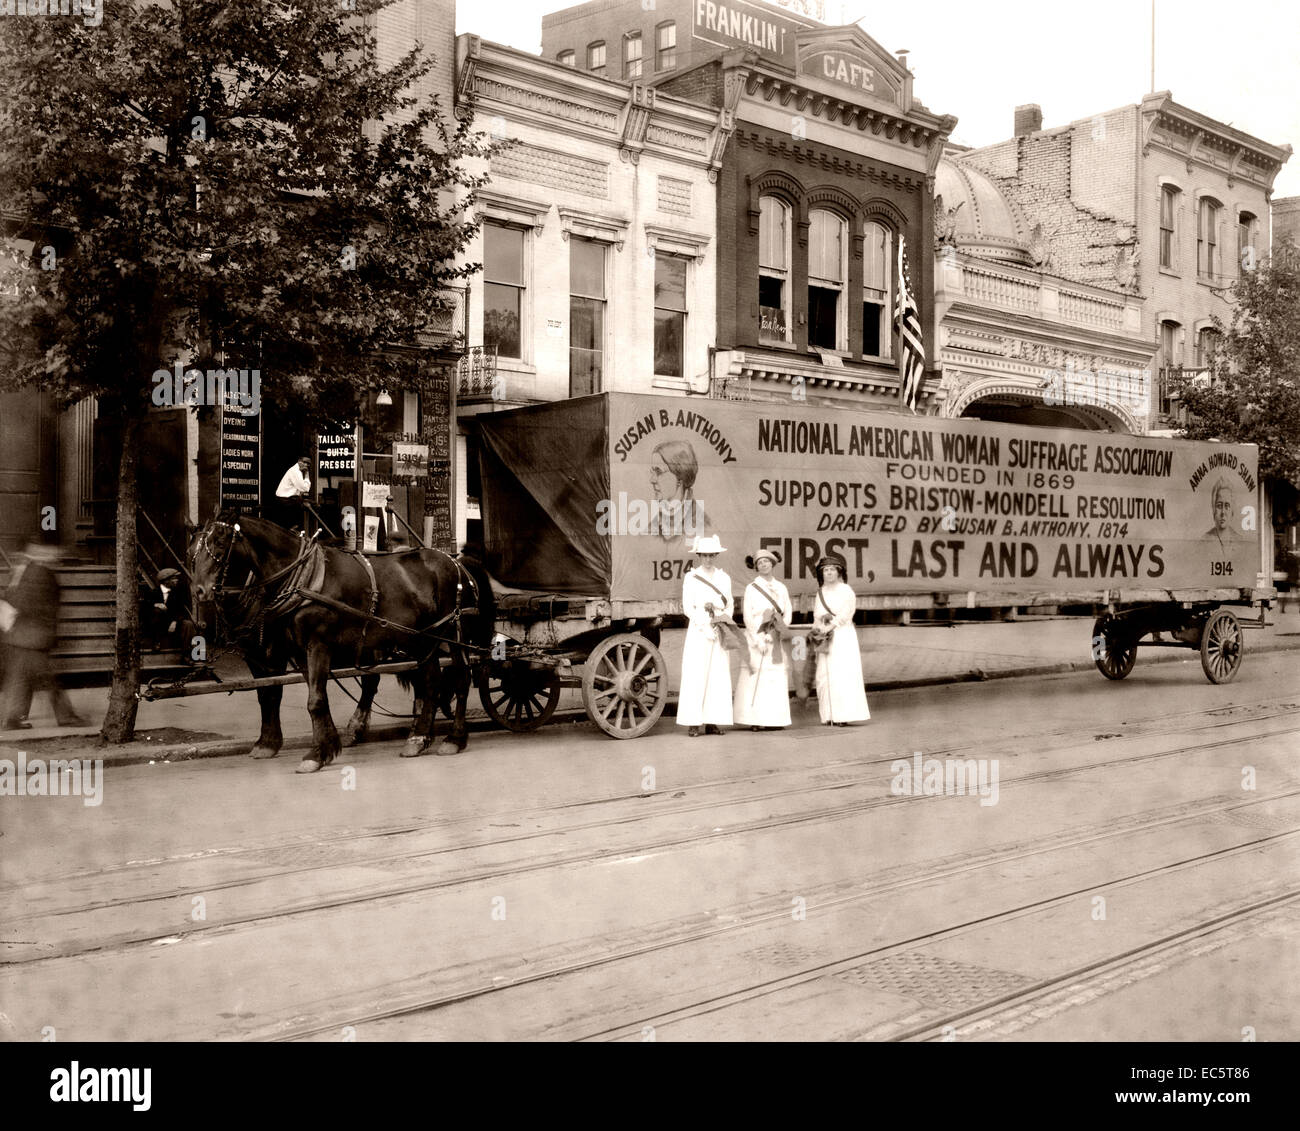 Trois femmes debout dans la rue en face de chariot tiré par des chevaux avec signe, national American Woman Suffrage Association fondée en 1869 prend en charge bristow-mondell résolution rédigée par Susan b. Anthony, 1874, "d'abord et toujours." vers 1917. Banque D'Images